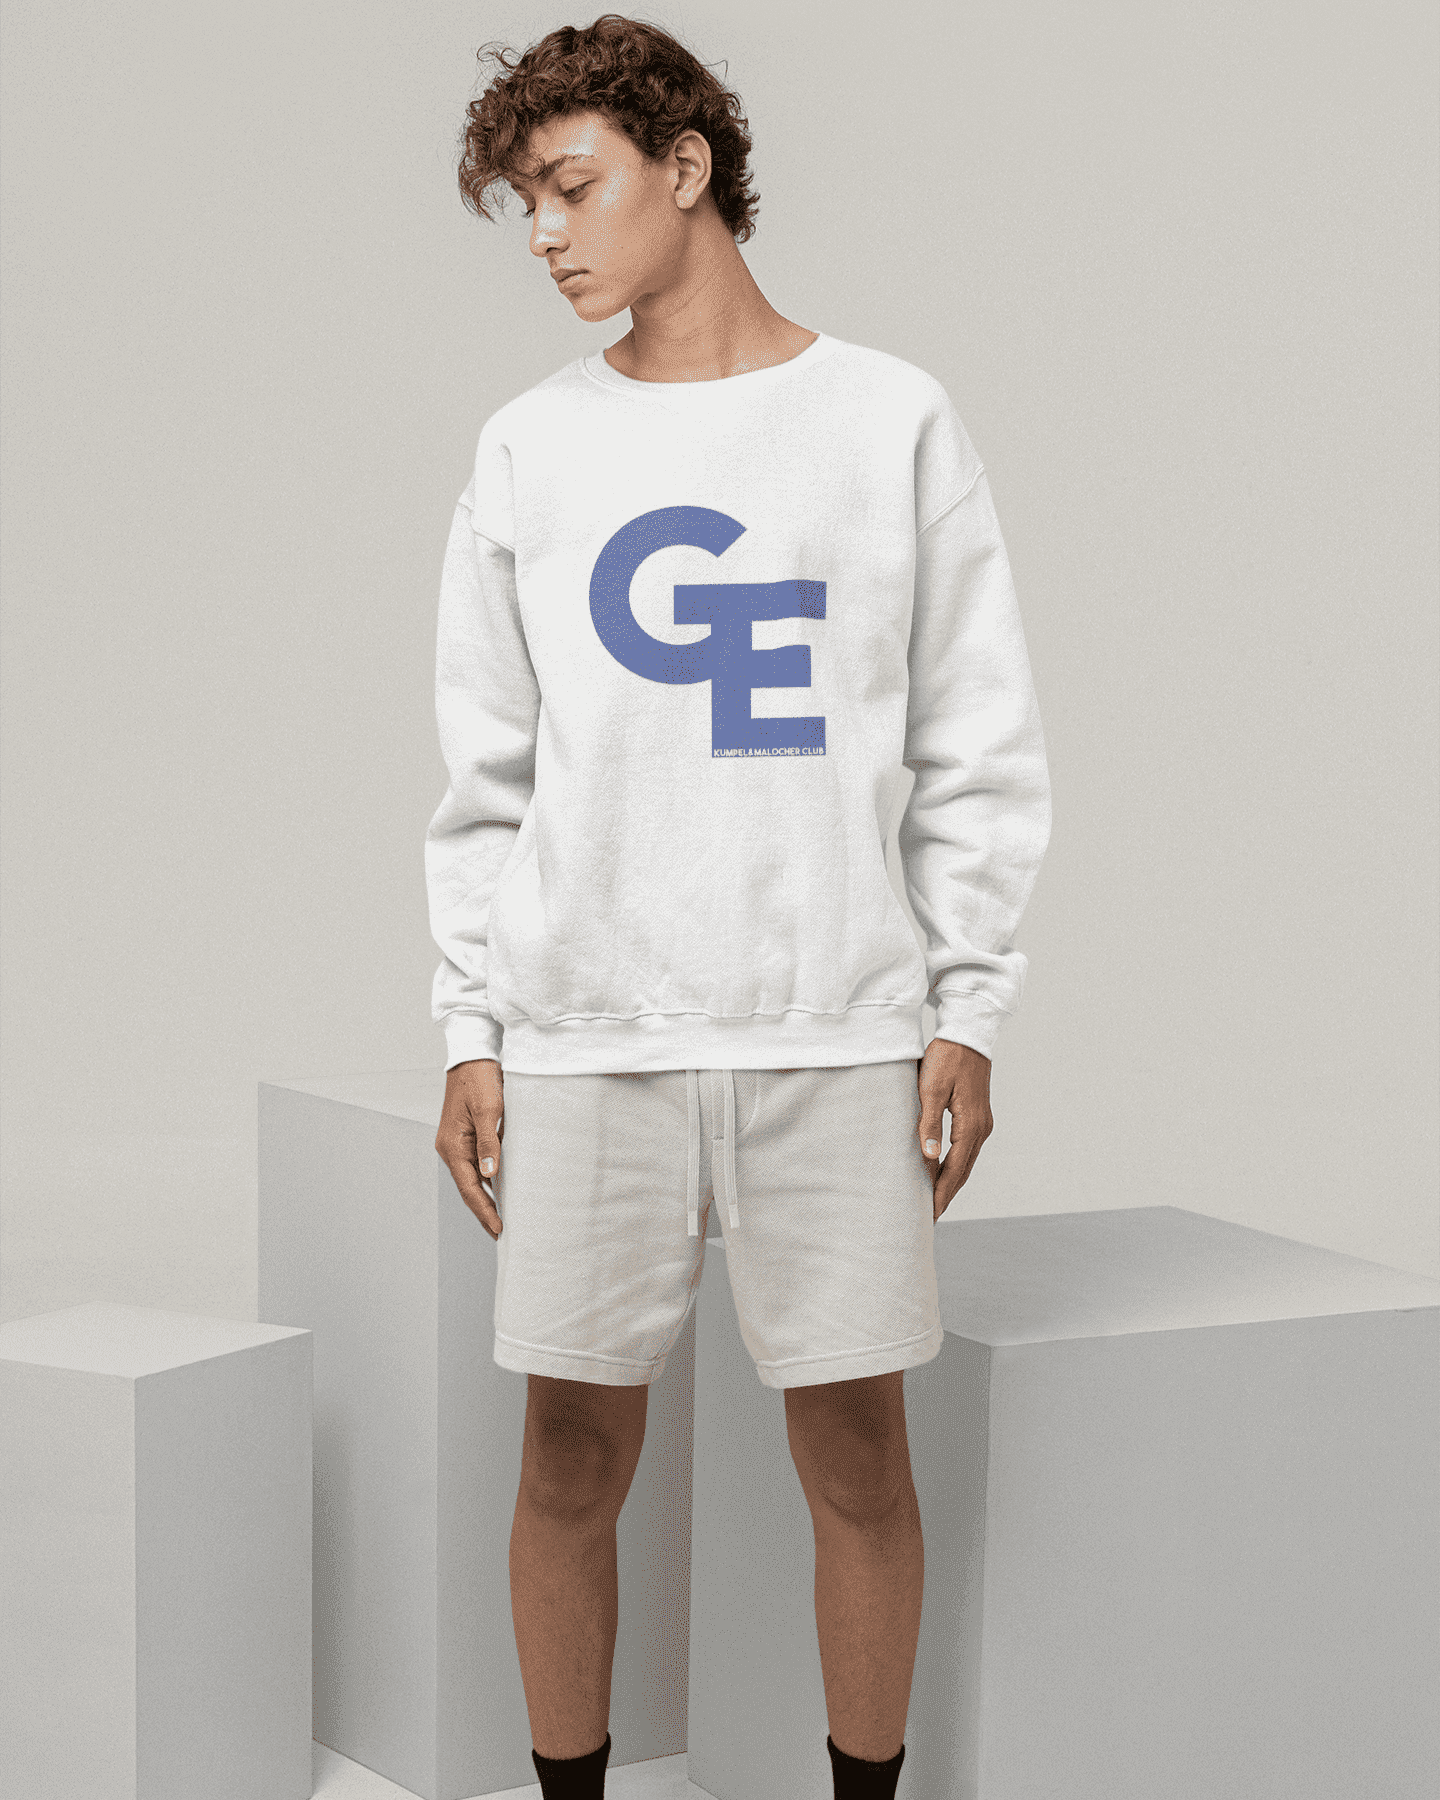 GE - Unisex Sweatshirt